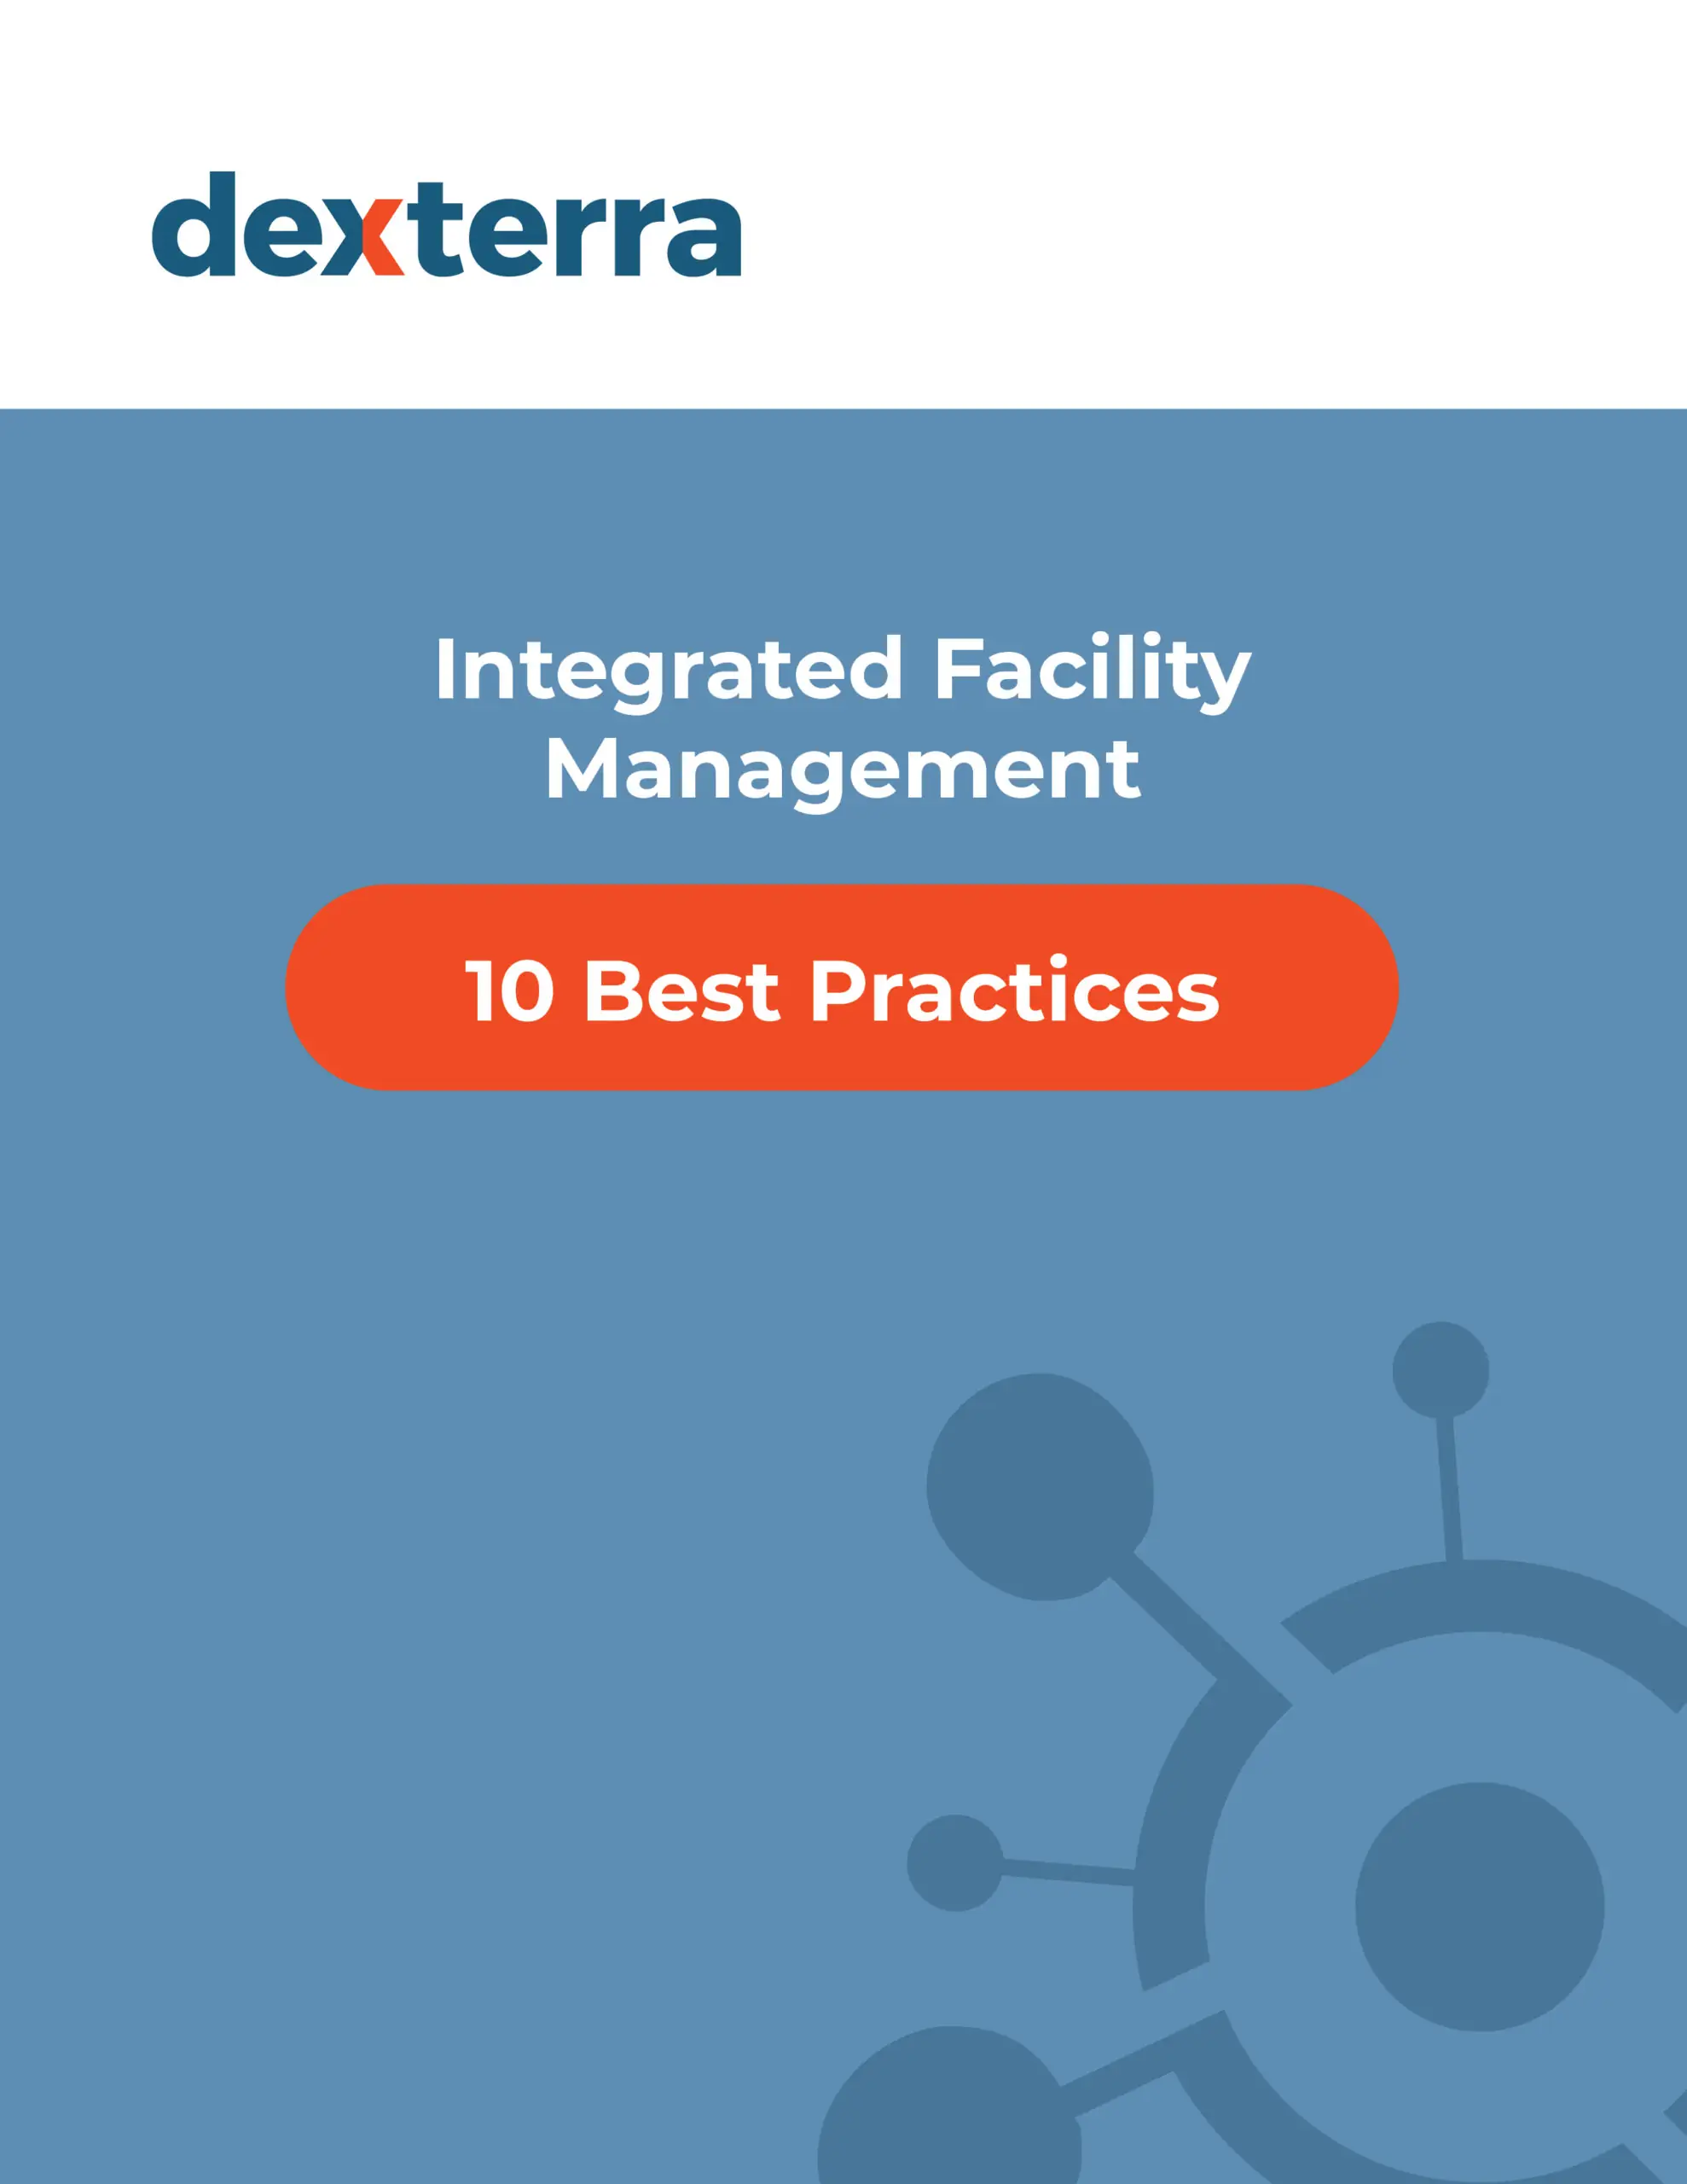 10 IFM Best Practices